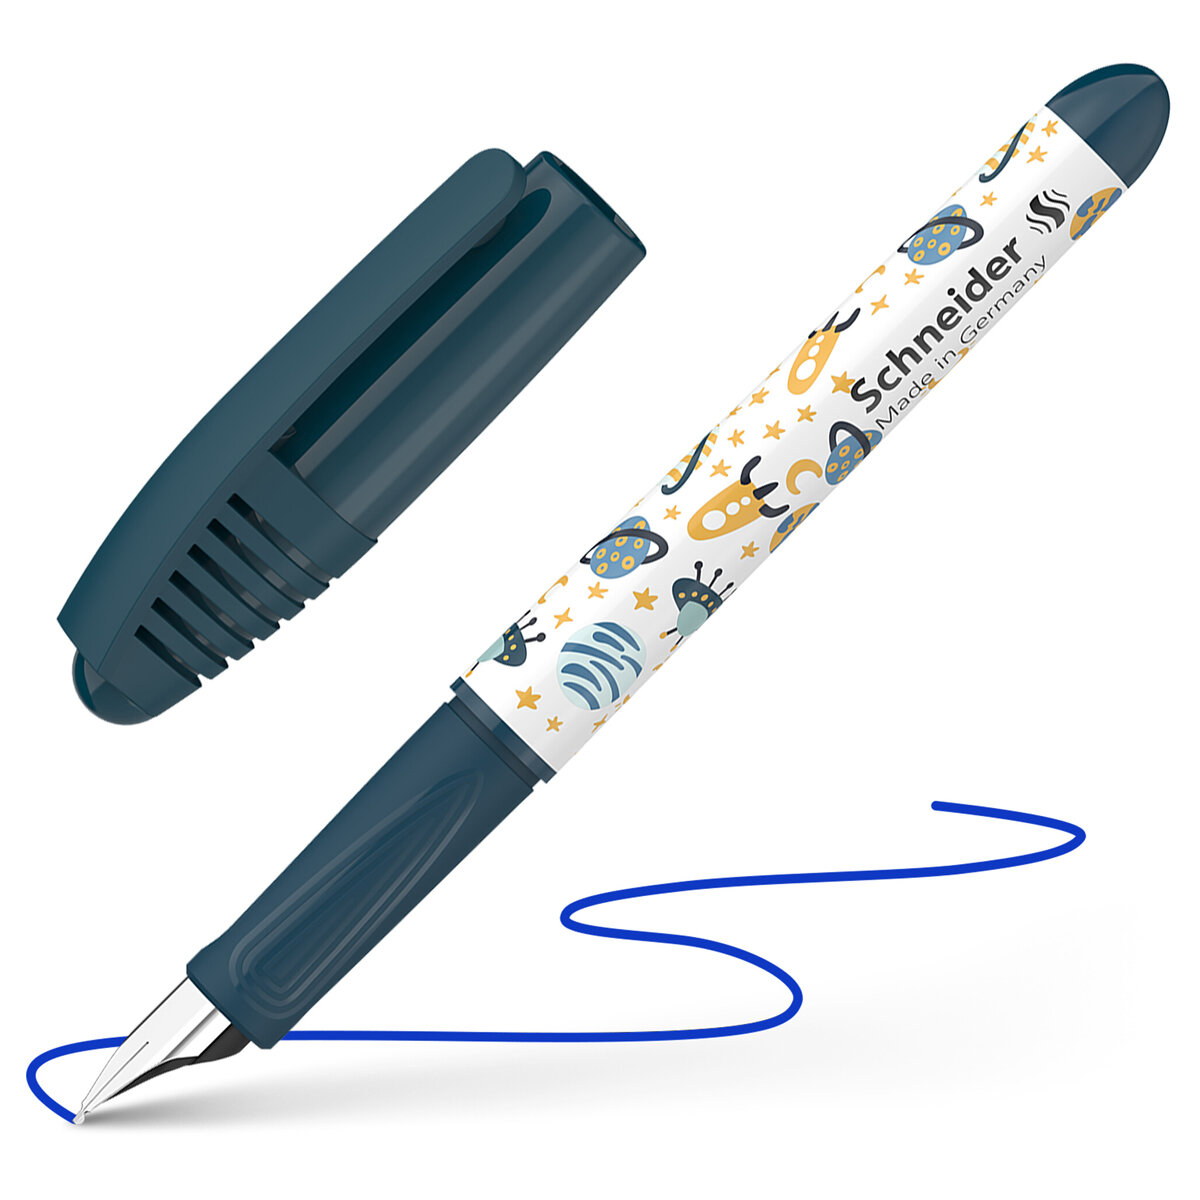 Ручка перьевая "Zippi Space" 1 картридж, грип, темно-синий-белый корпус 168917 синяя | Магазин канцтоваров и игрушек Львёнок